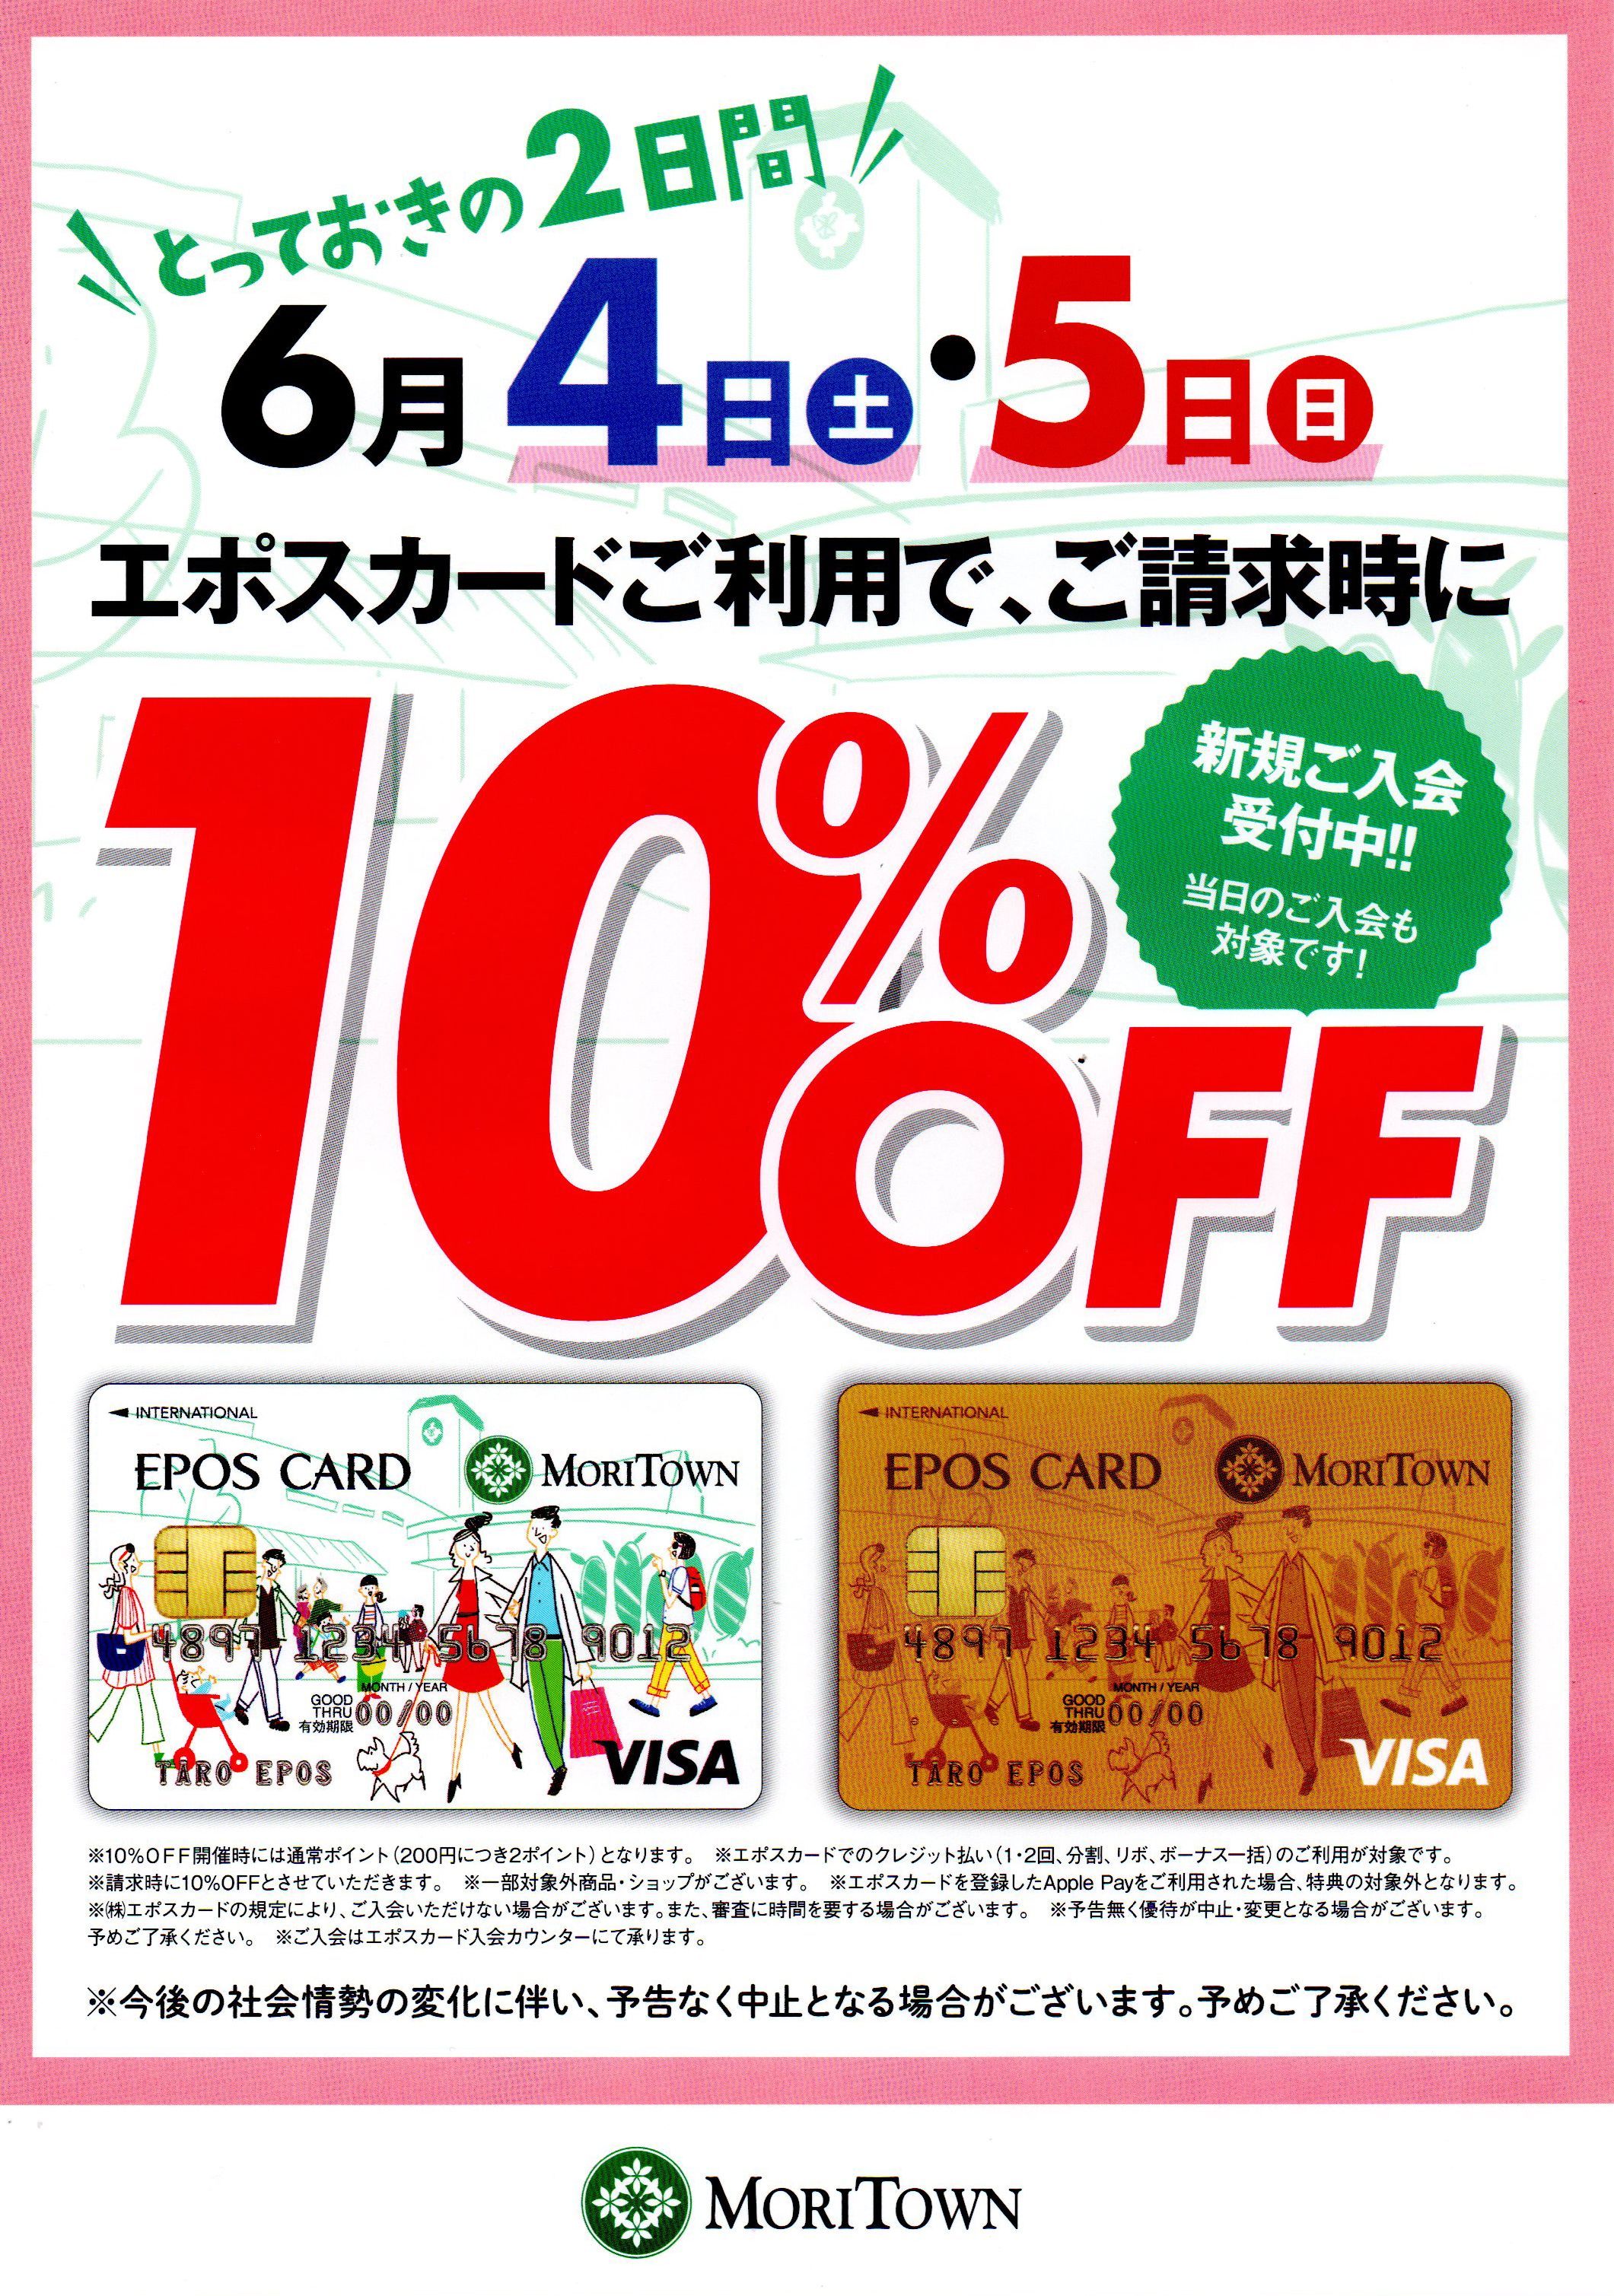 メガネのタニ 昭島店 エポスカード 10%OFF キャンペーン